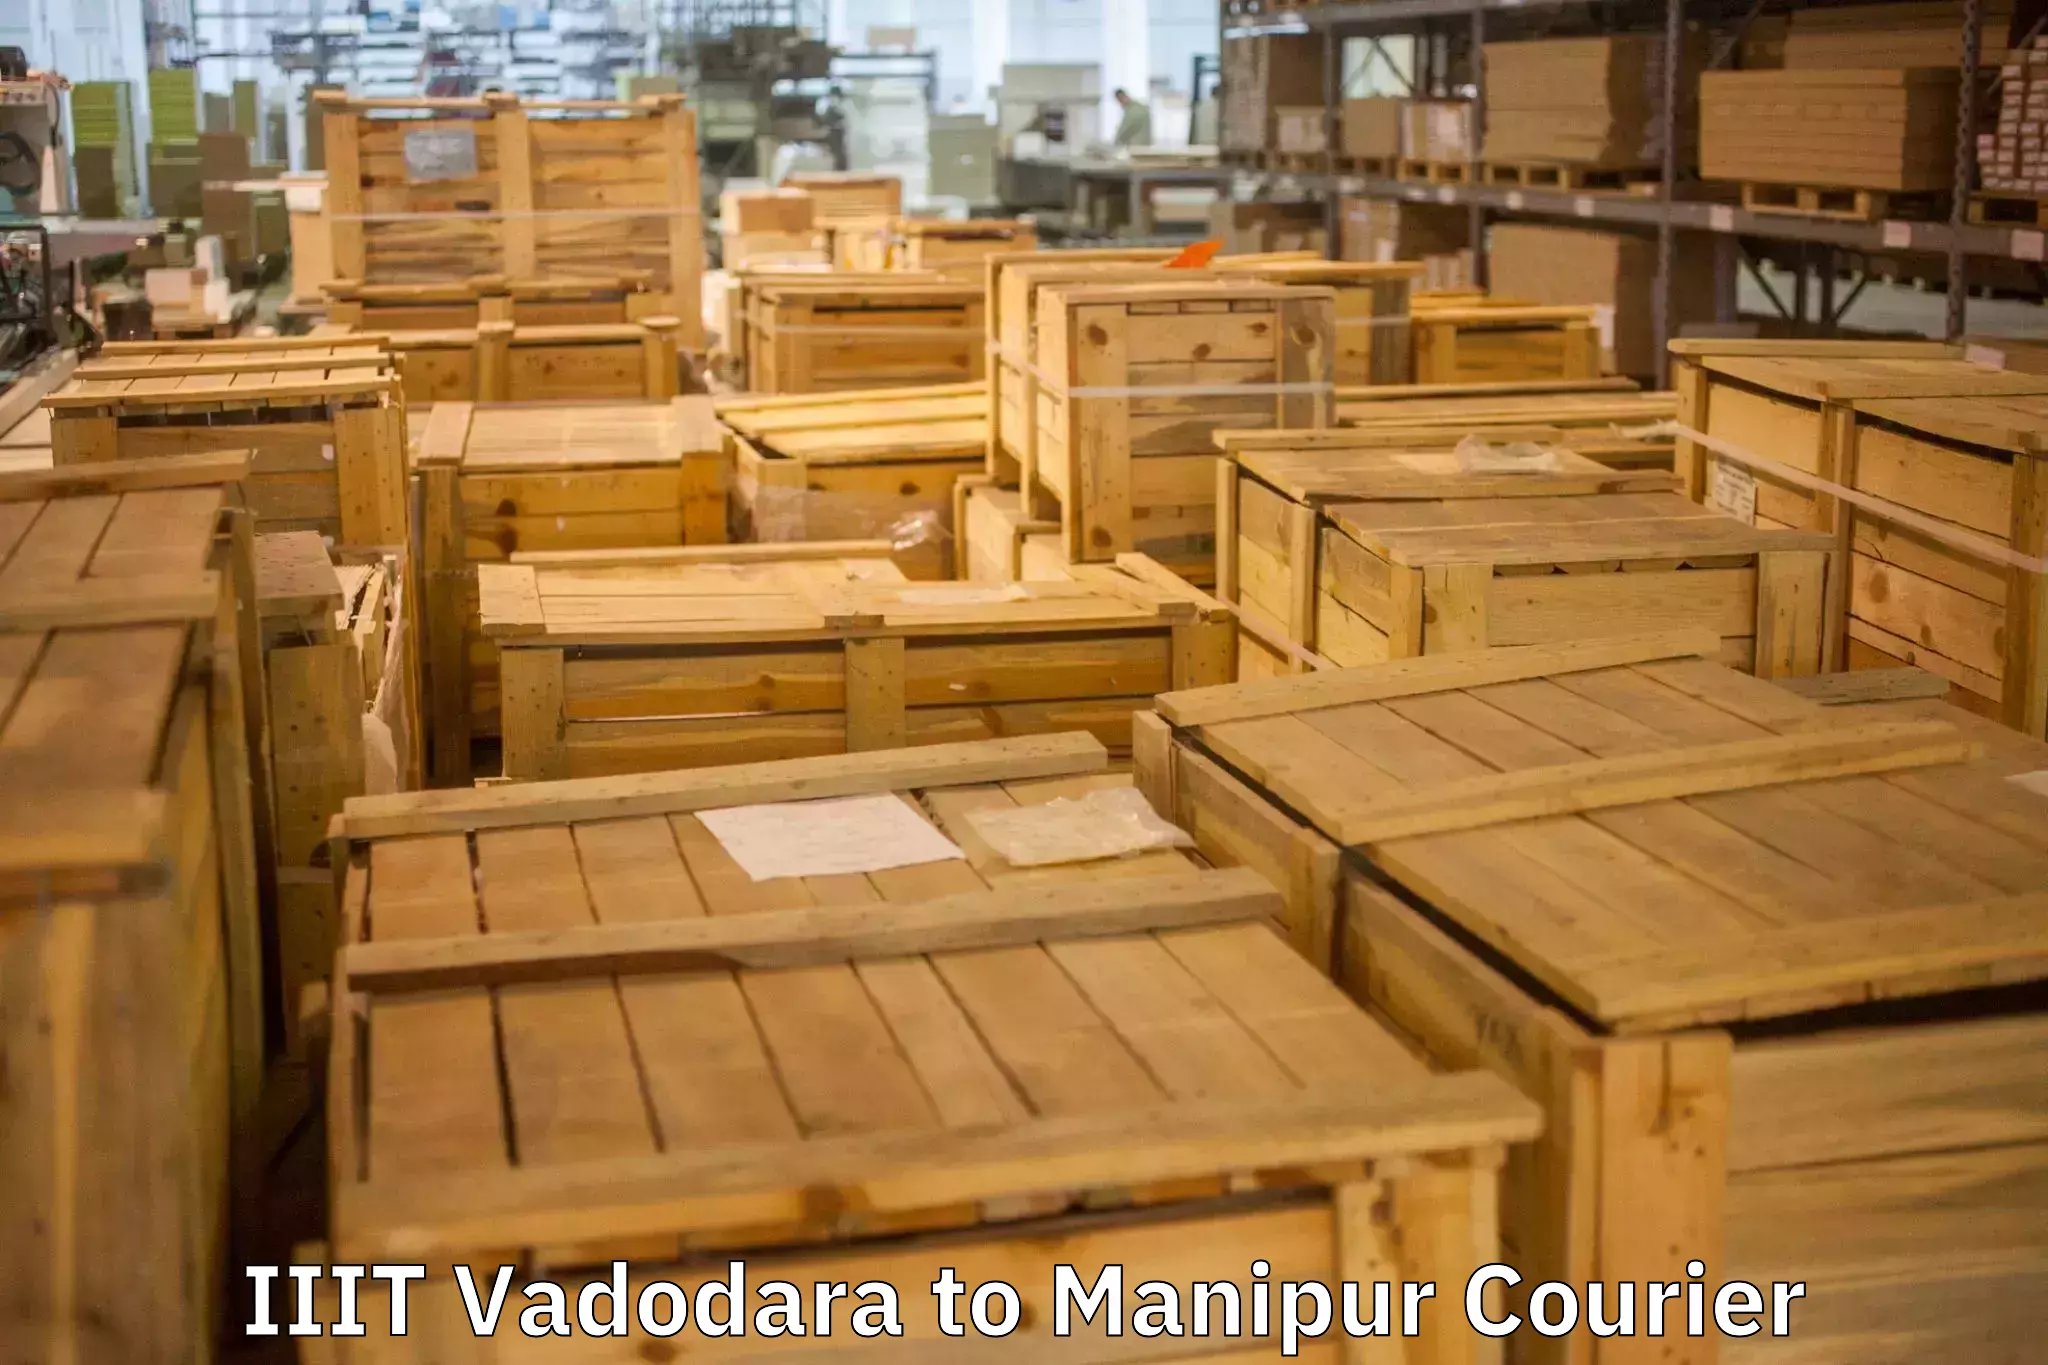 Efficient relocation services IIIT Vadodara to Churachandpur